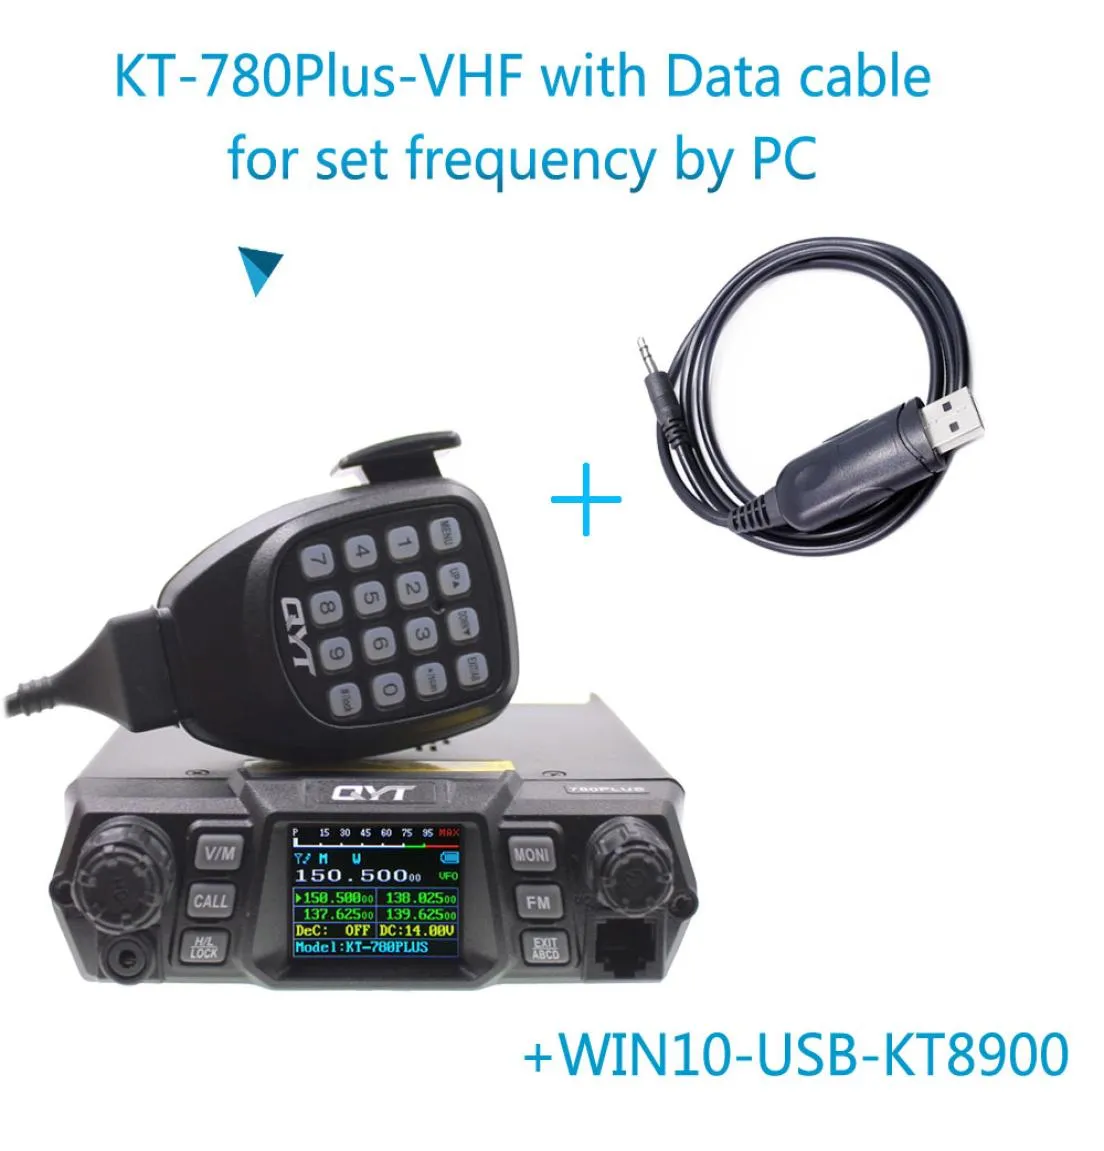 100 watts super puissance QYT KT780 plus VHF136174MHz Radiomobile Transmetteur KT780 200Channels Communication à longue portée6737744